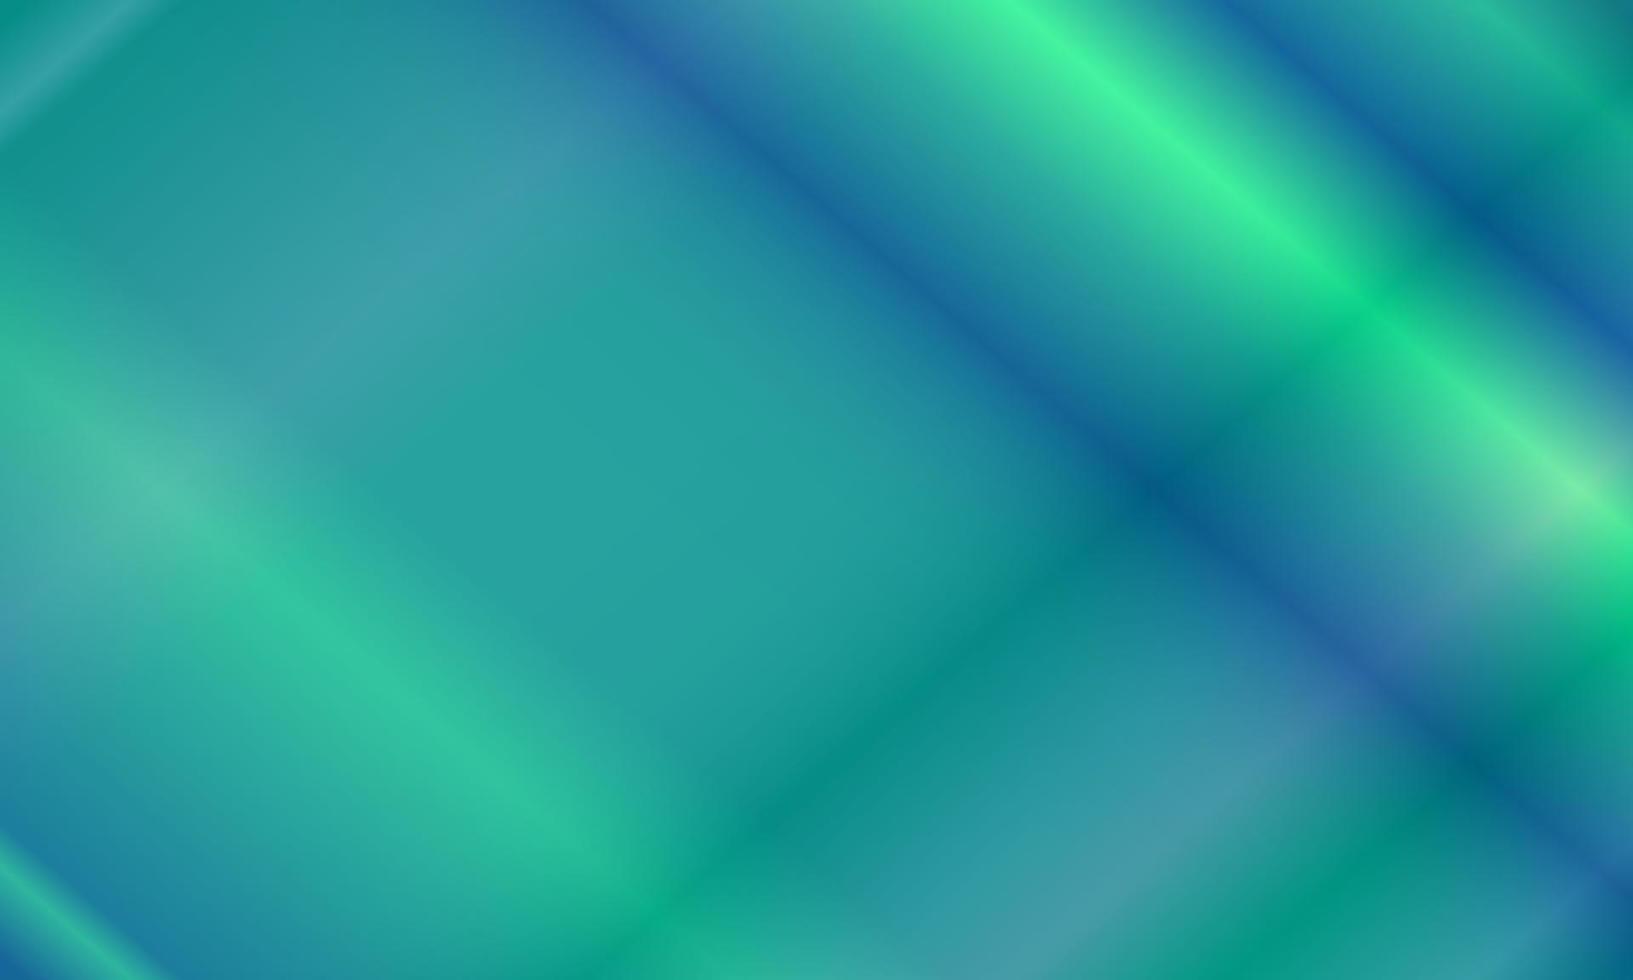 patrón de luz de neón verde tosca y azul oscuro. estilo abstracto, brillante, degradado, borroso, moderno y colorido. ideal para fondo, telón de fondo, papel tapiz, portada, afiche, pancarta o volante vector